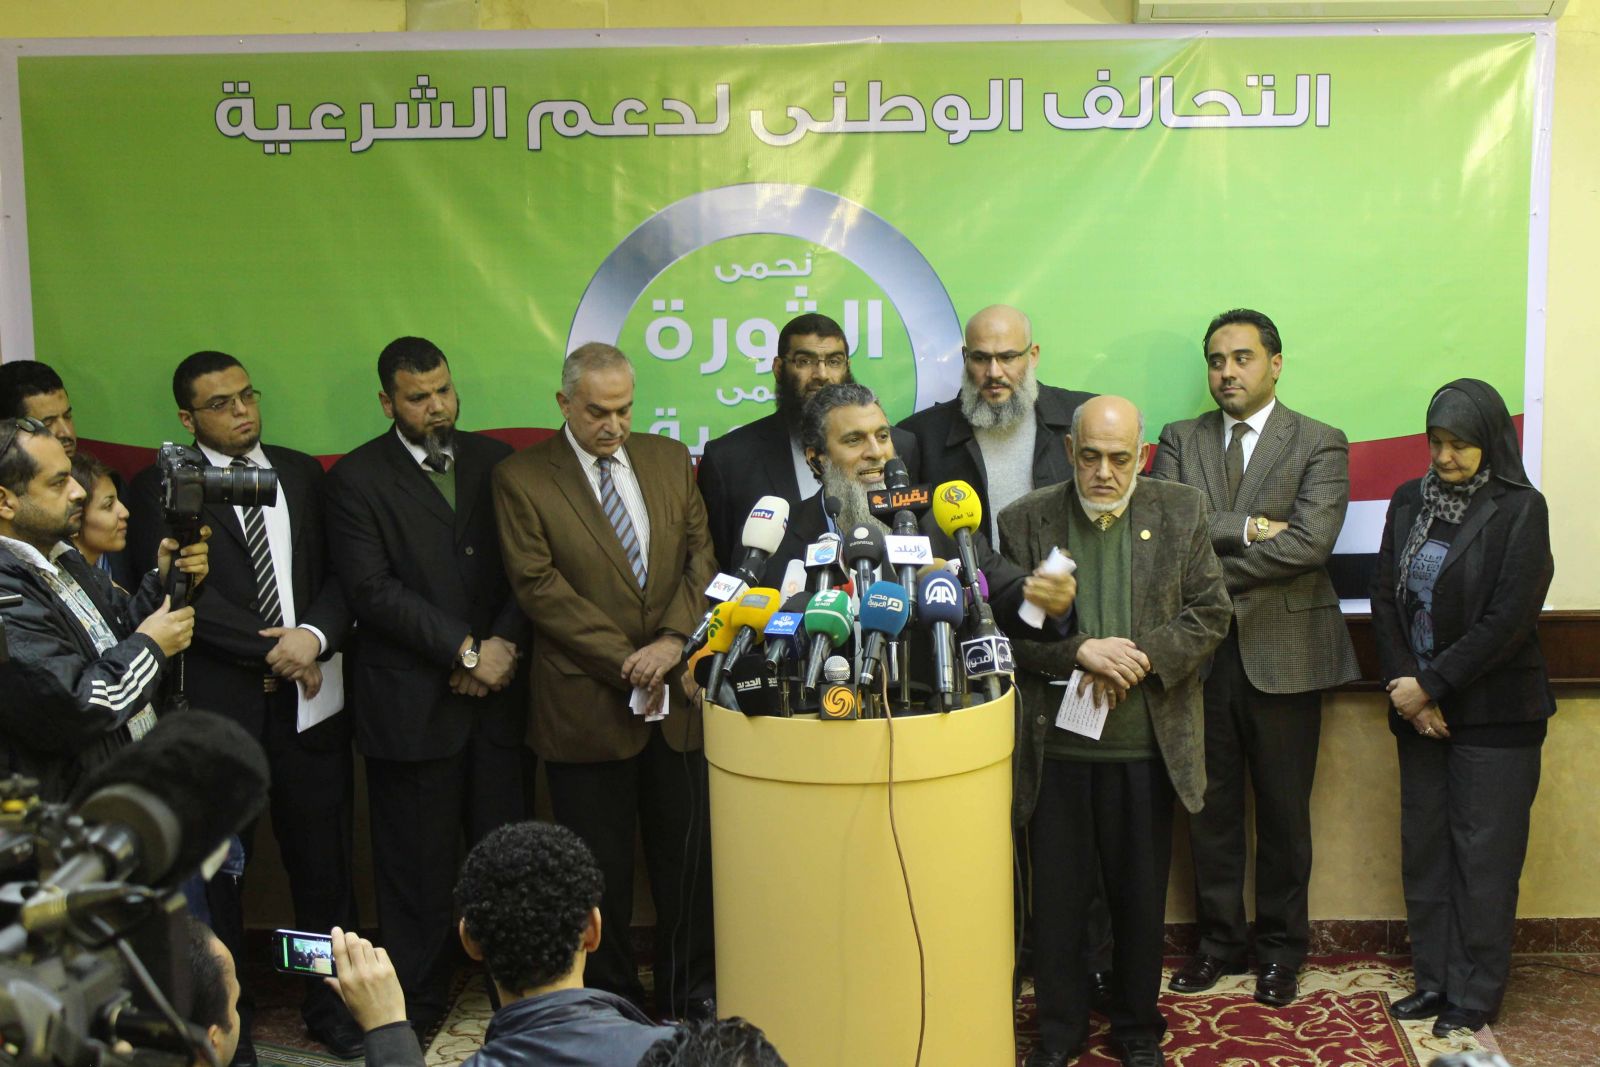 الإخوان المسلمون في مصر بين مبادرتين-1